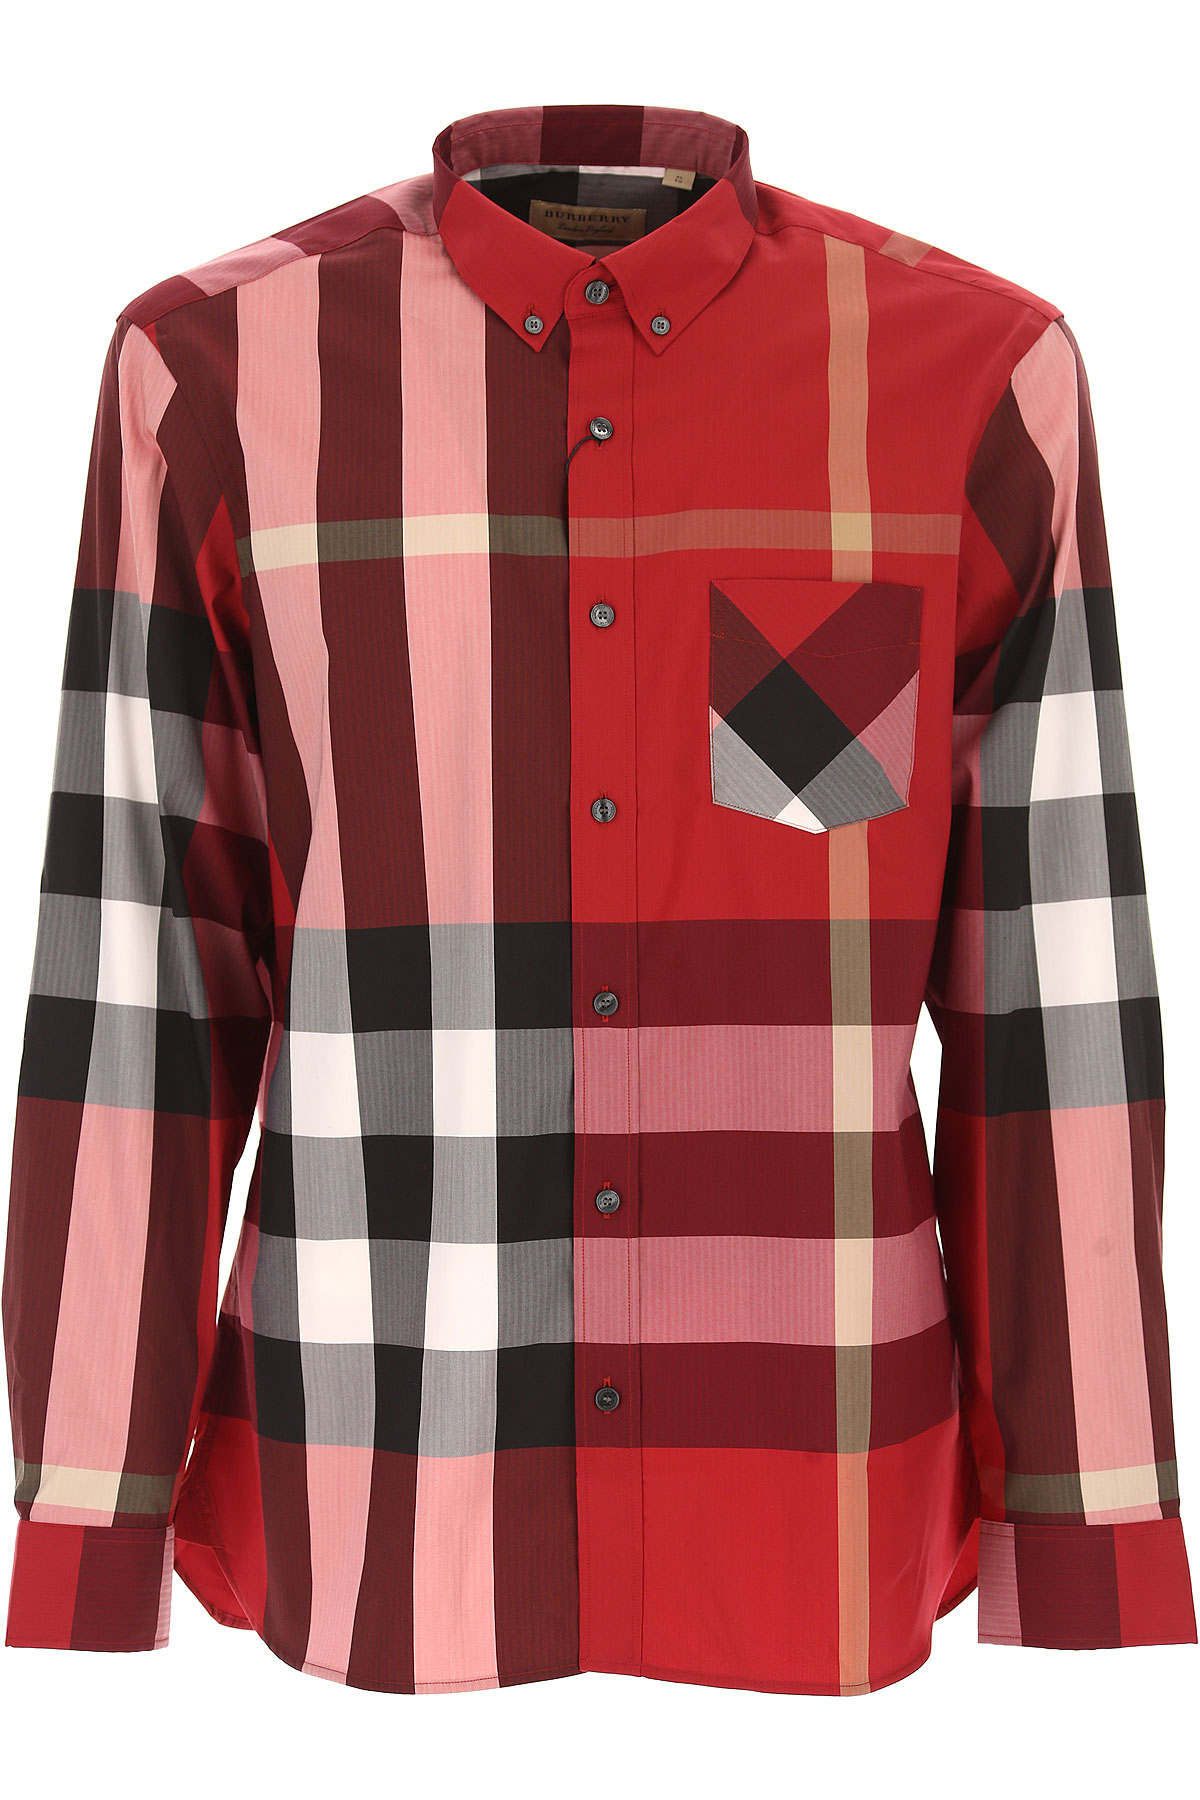 Vêtements Homme Burberry, Rouge défilé, Coton, 2017, L M XL